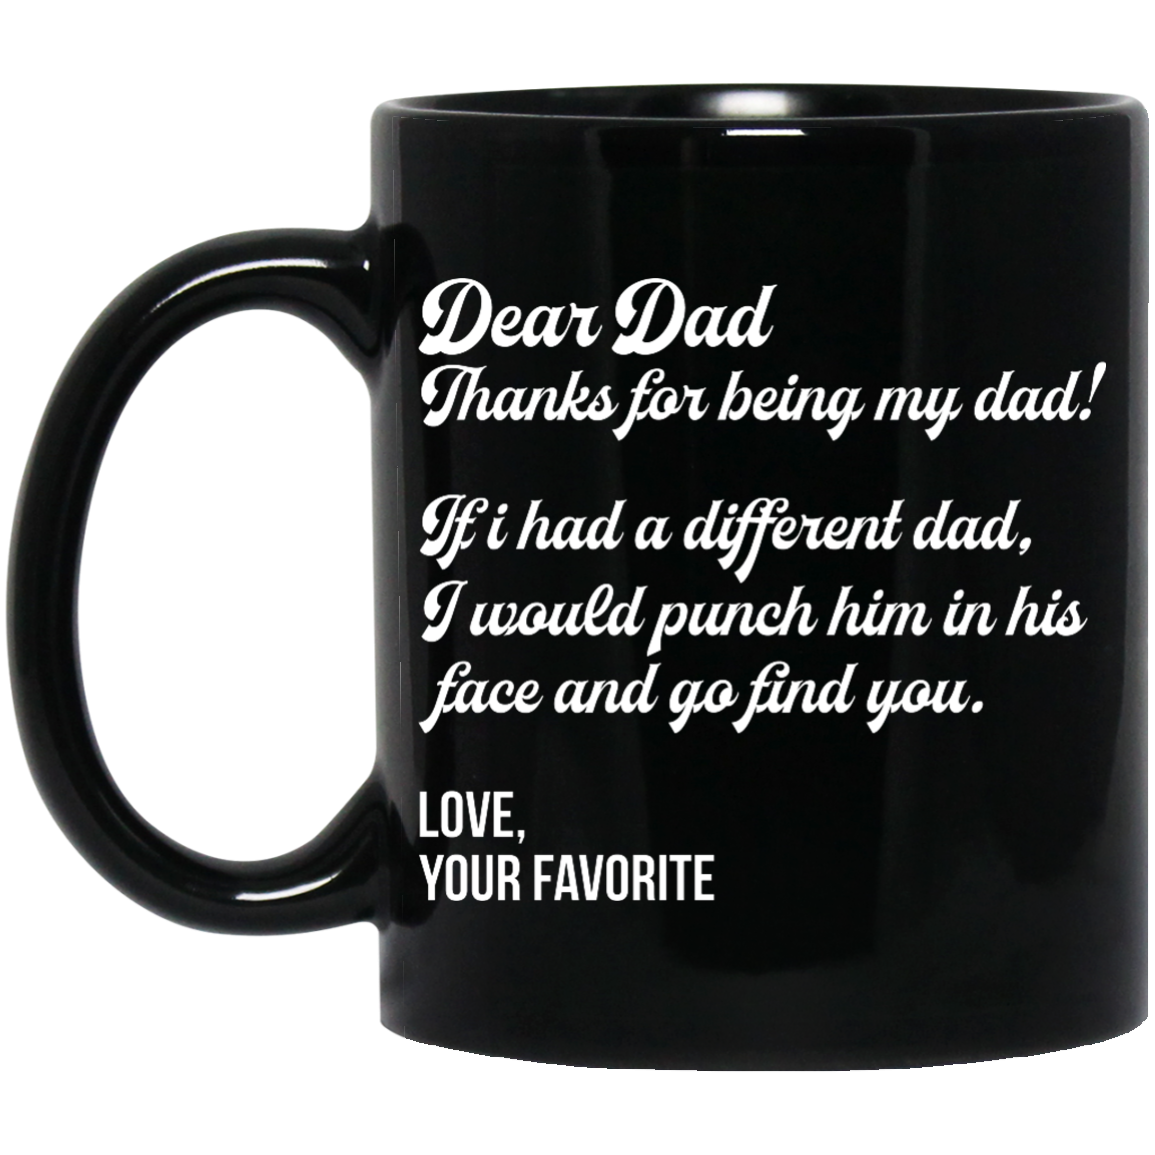 Dear Dad, Thanks for being my dad mugs - black mug